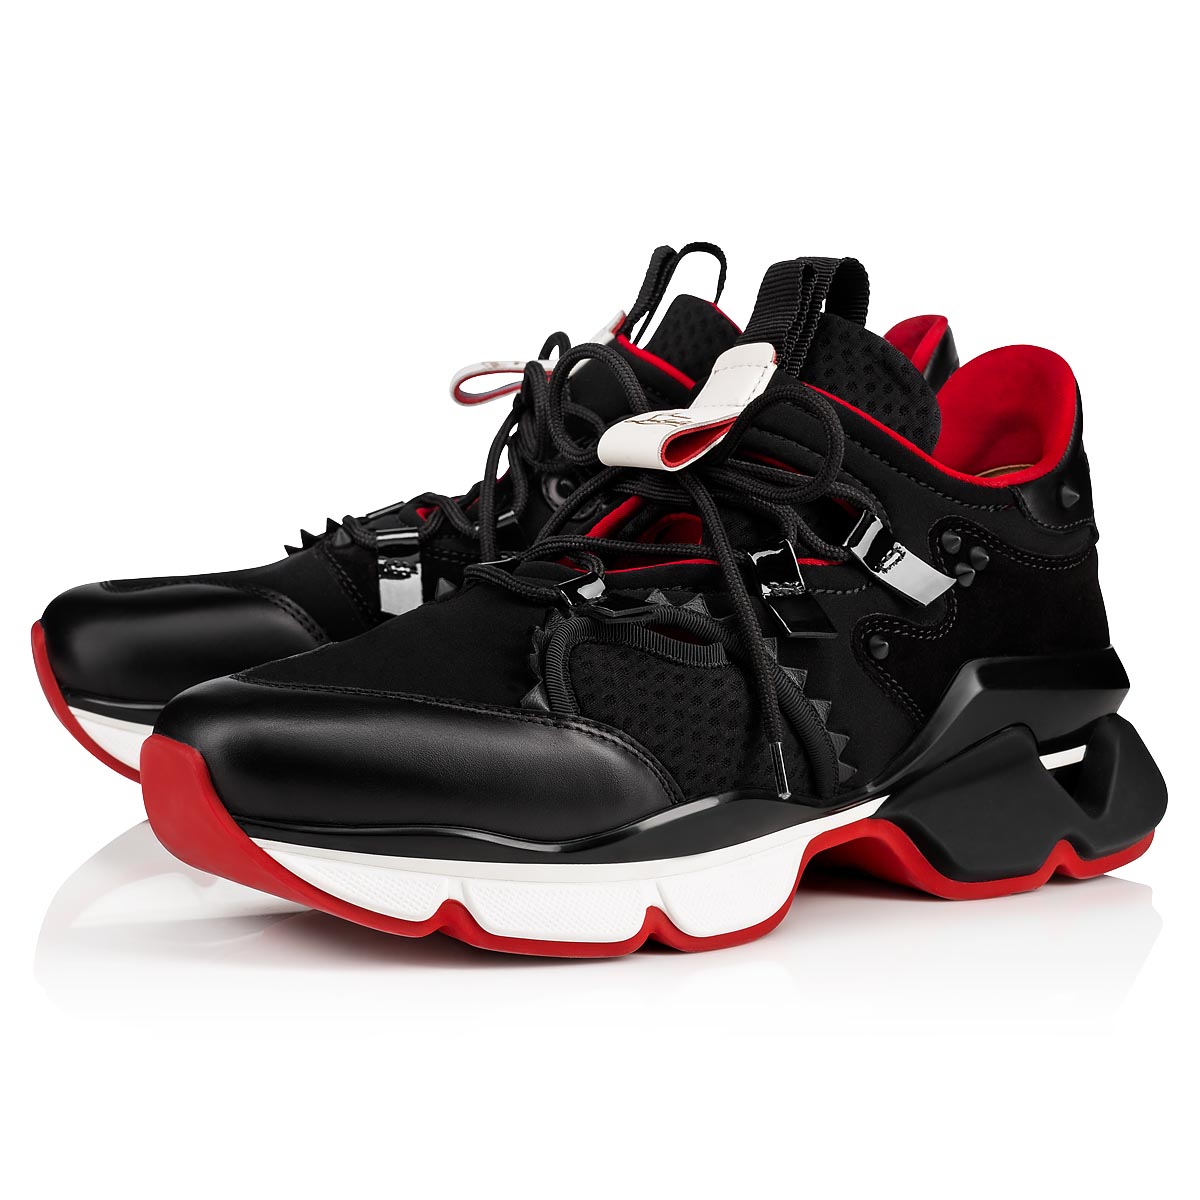 RED-RUNNER 000 BLACK Neopren - Shoes - Men - Christian Louboutin